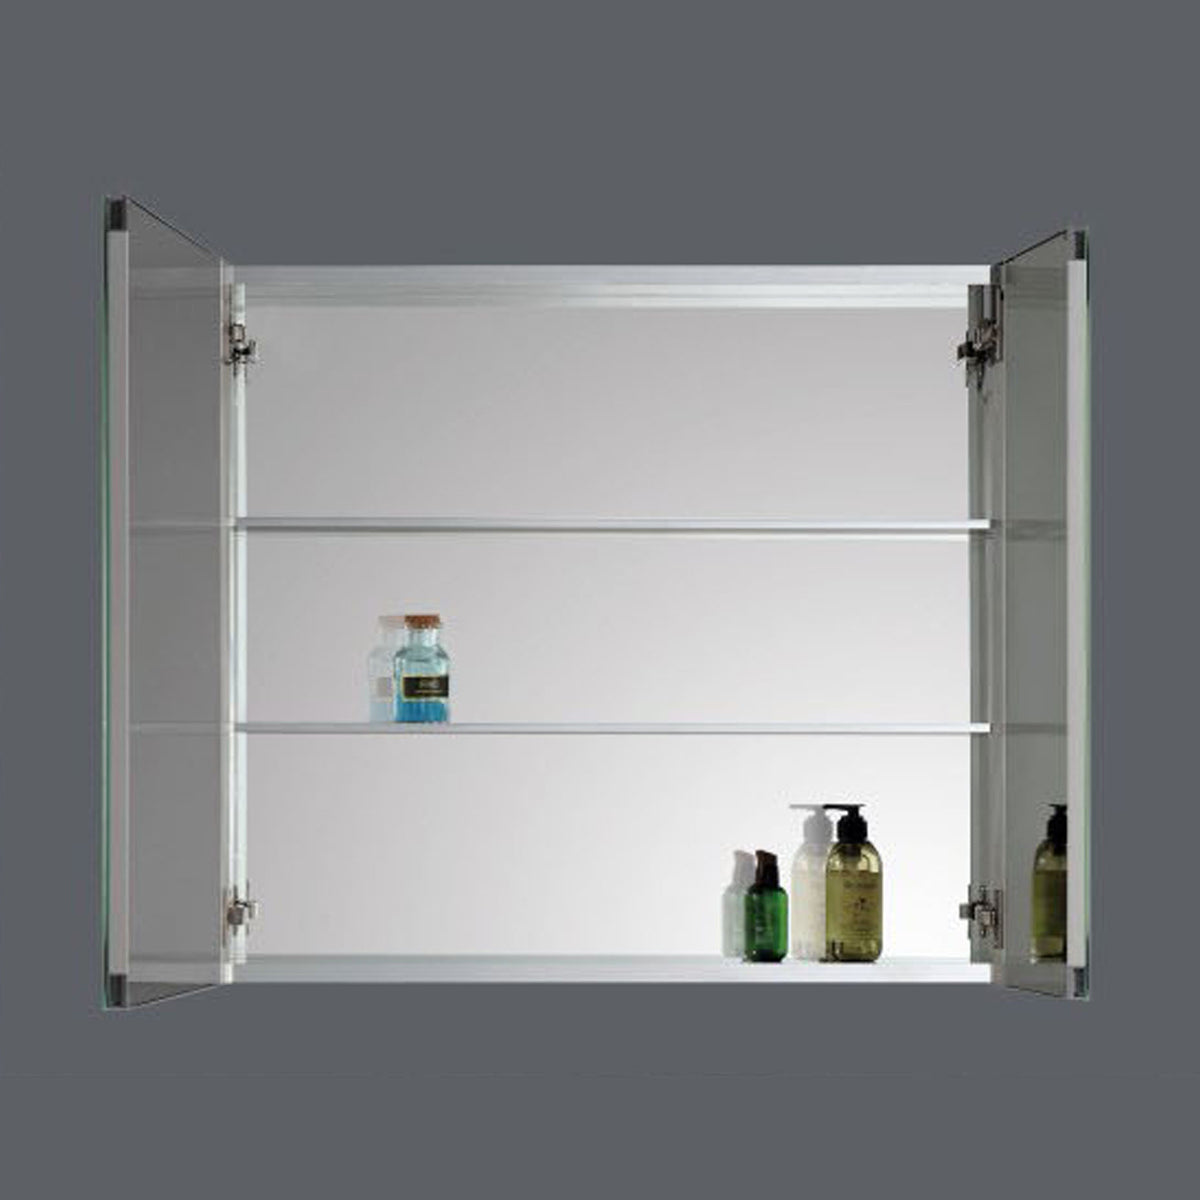 24" Aluminum Medicine Cabinet AMC Series - iStyle Bath